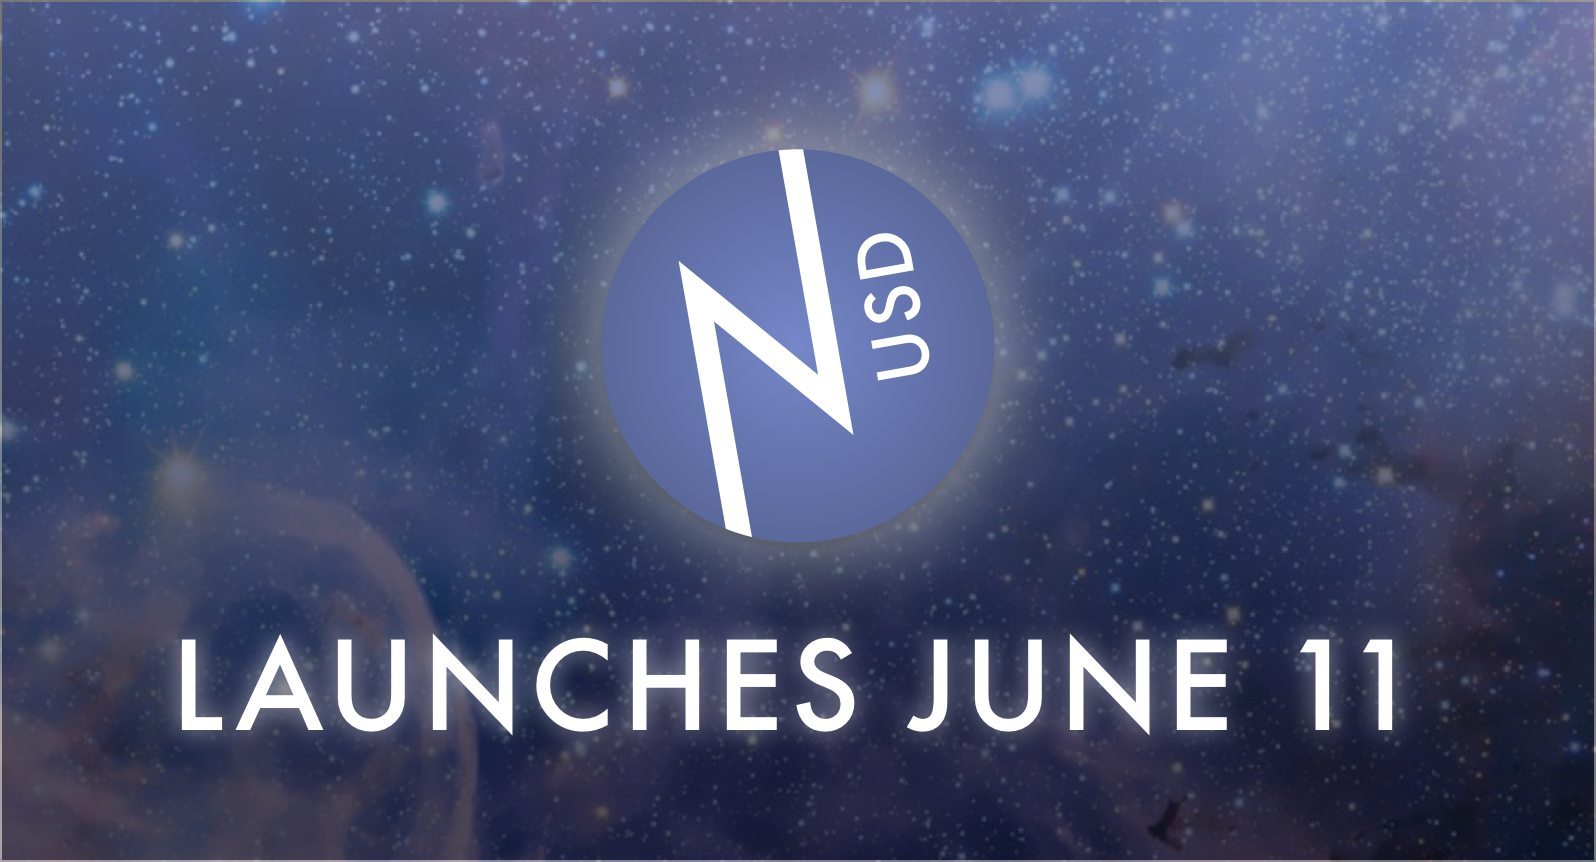 nUSD launches June 11!